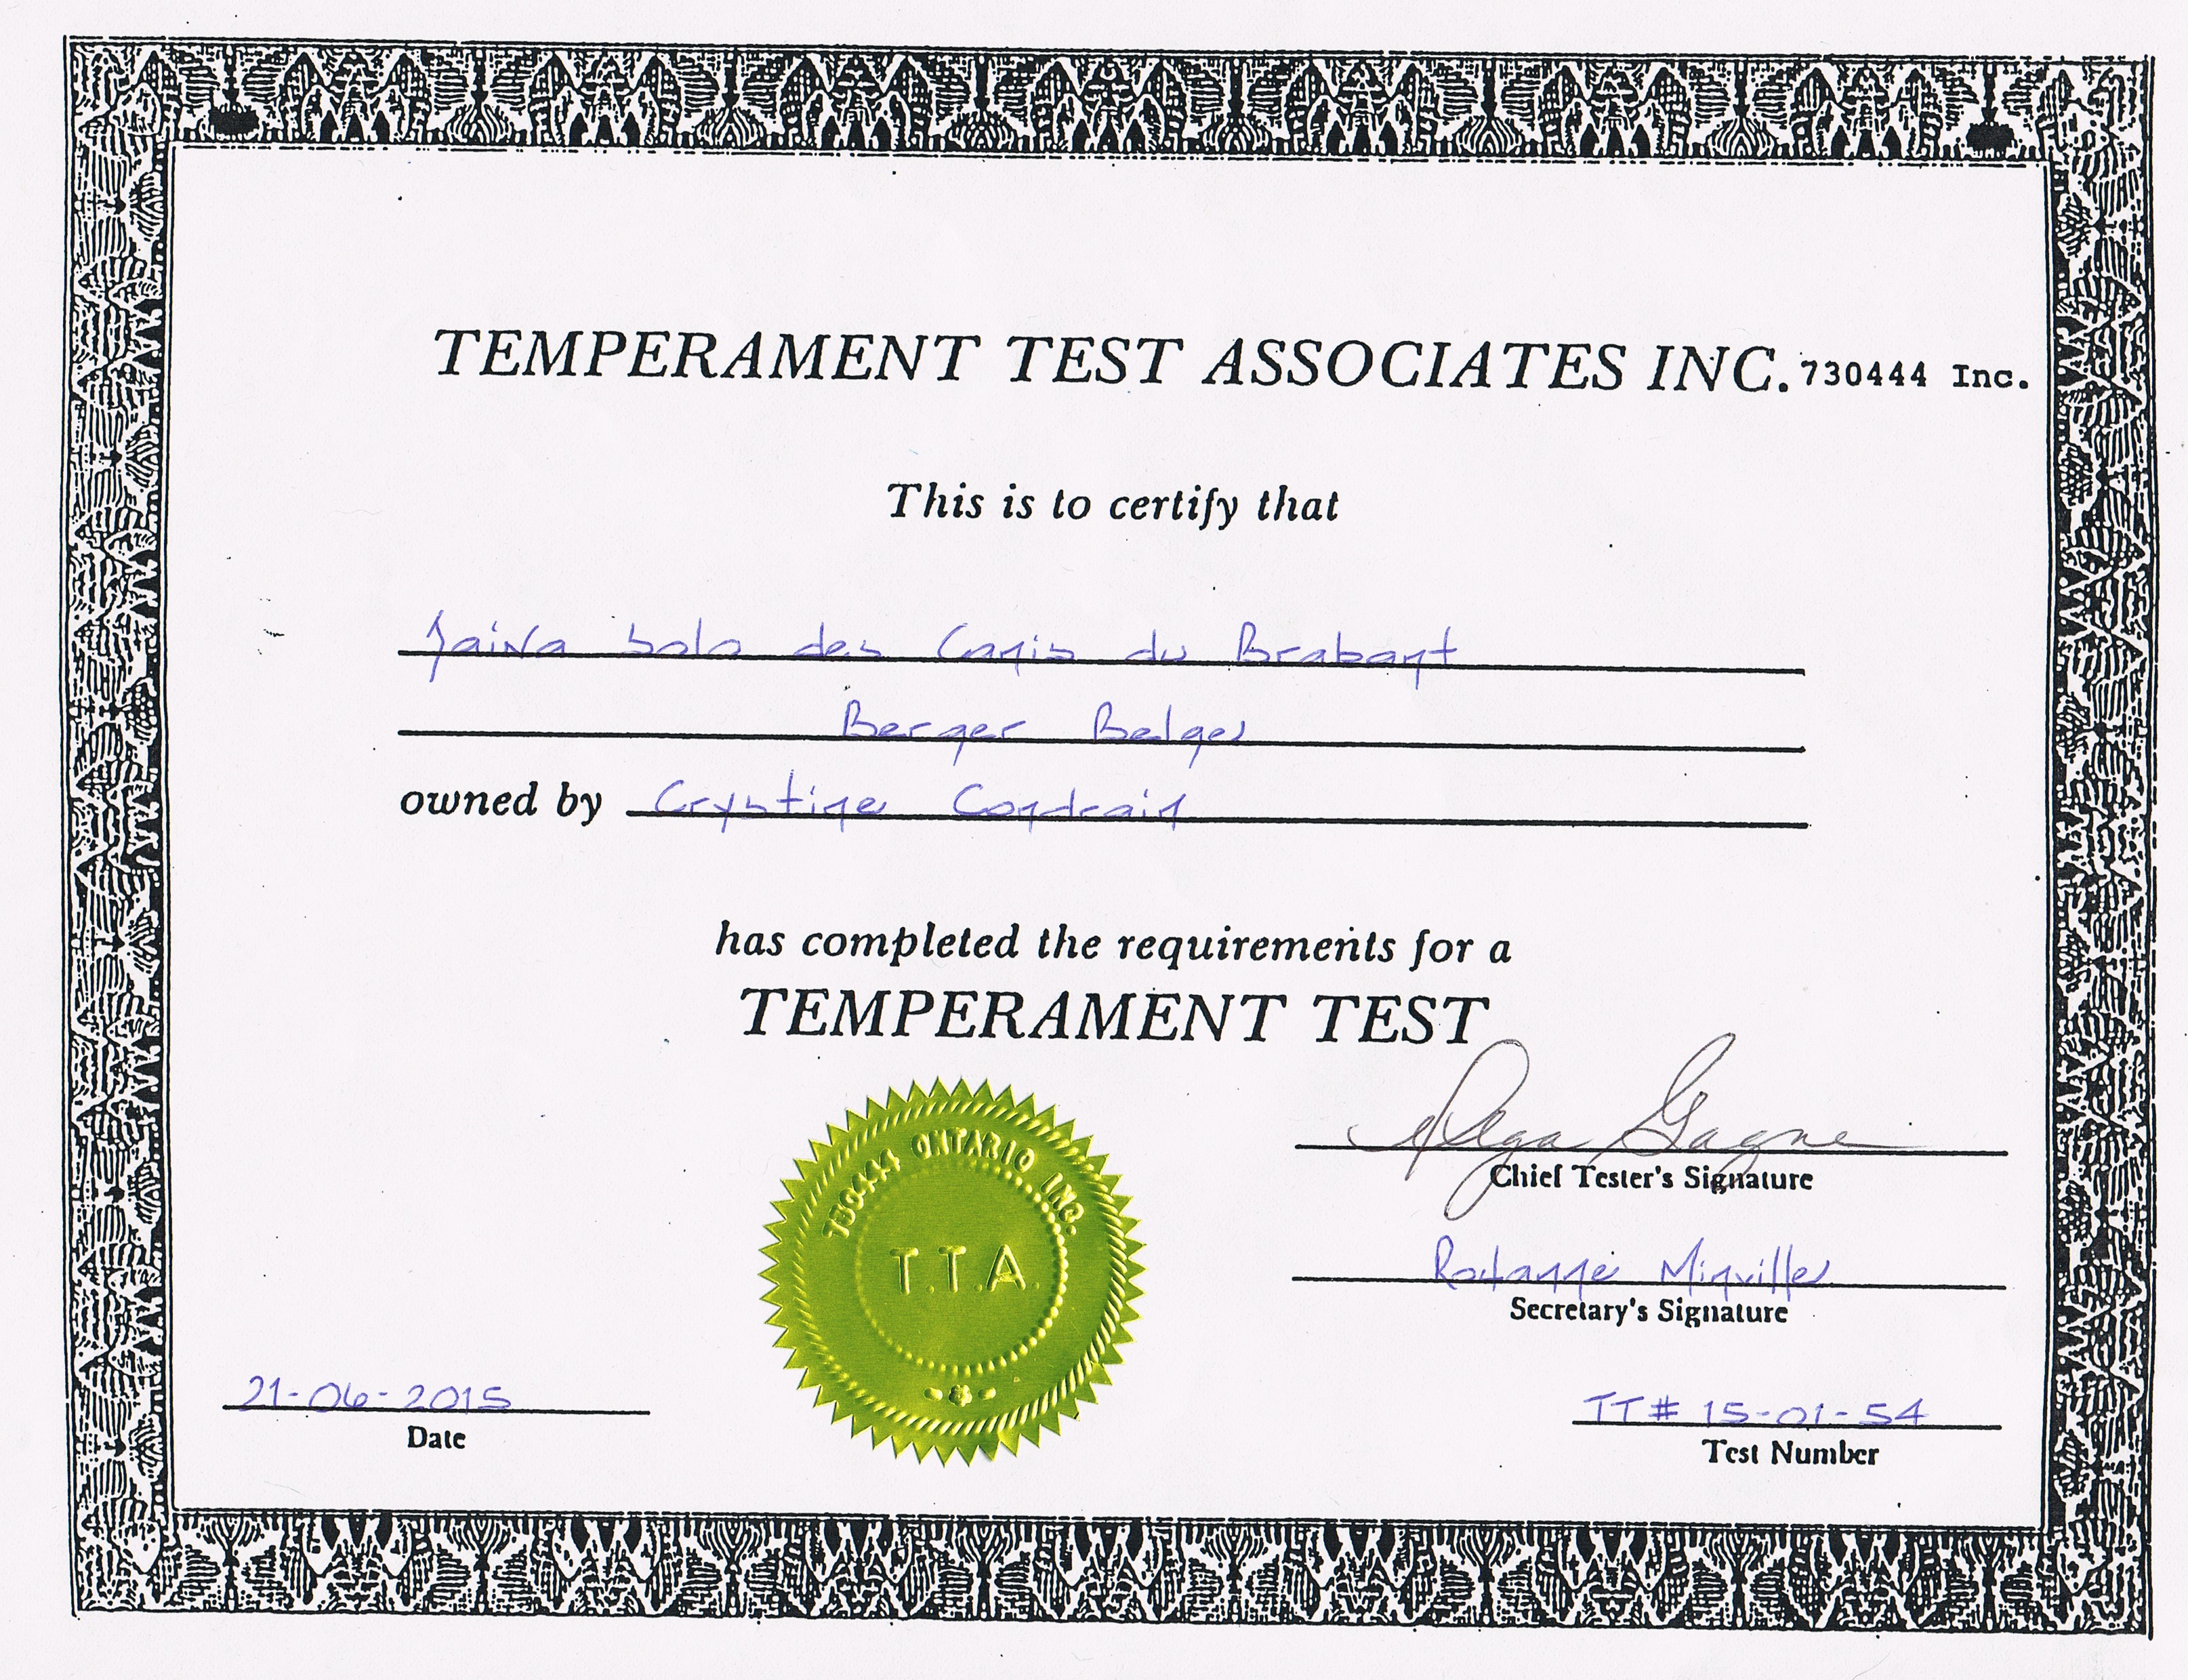 Temperament test